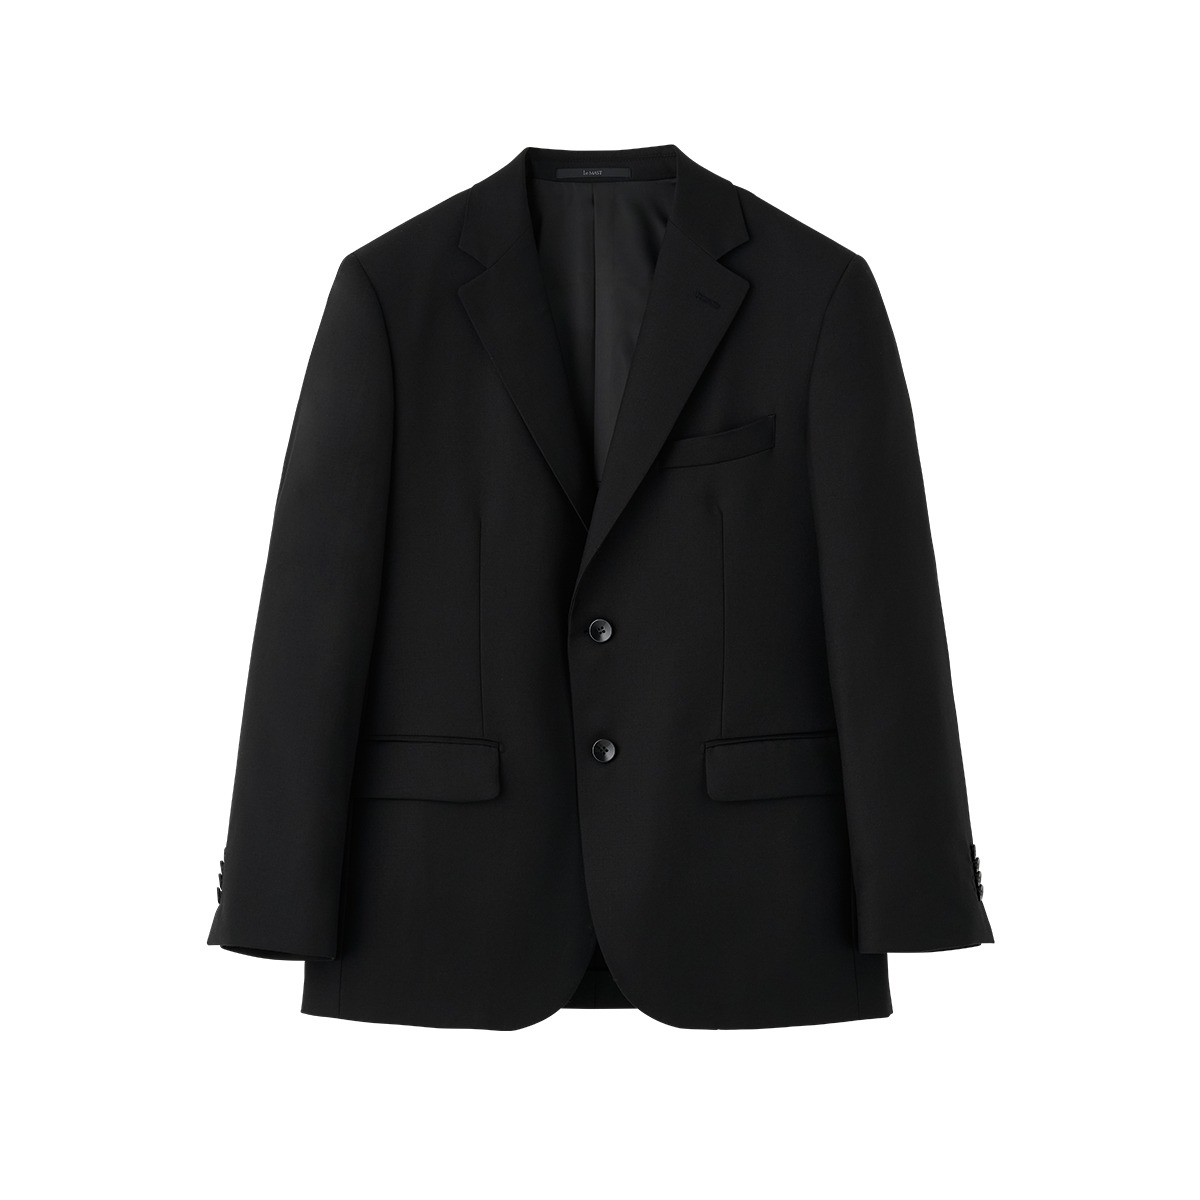 Black Solid Wool Suit